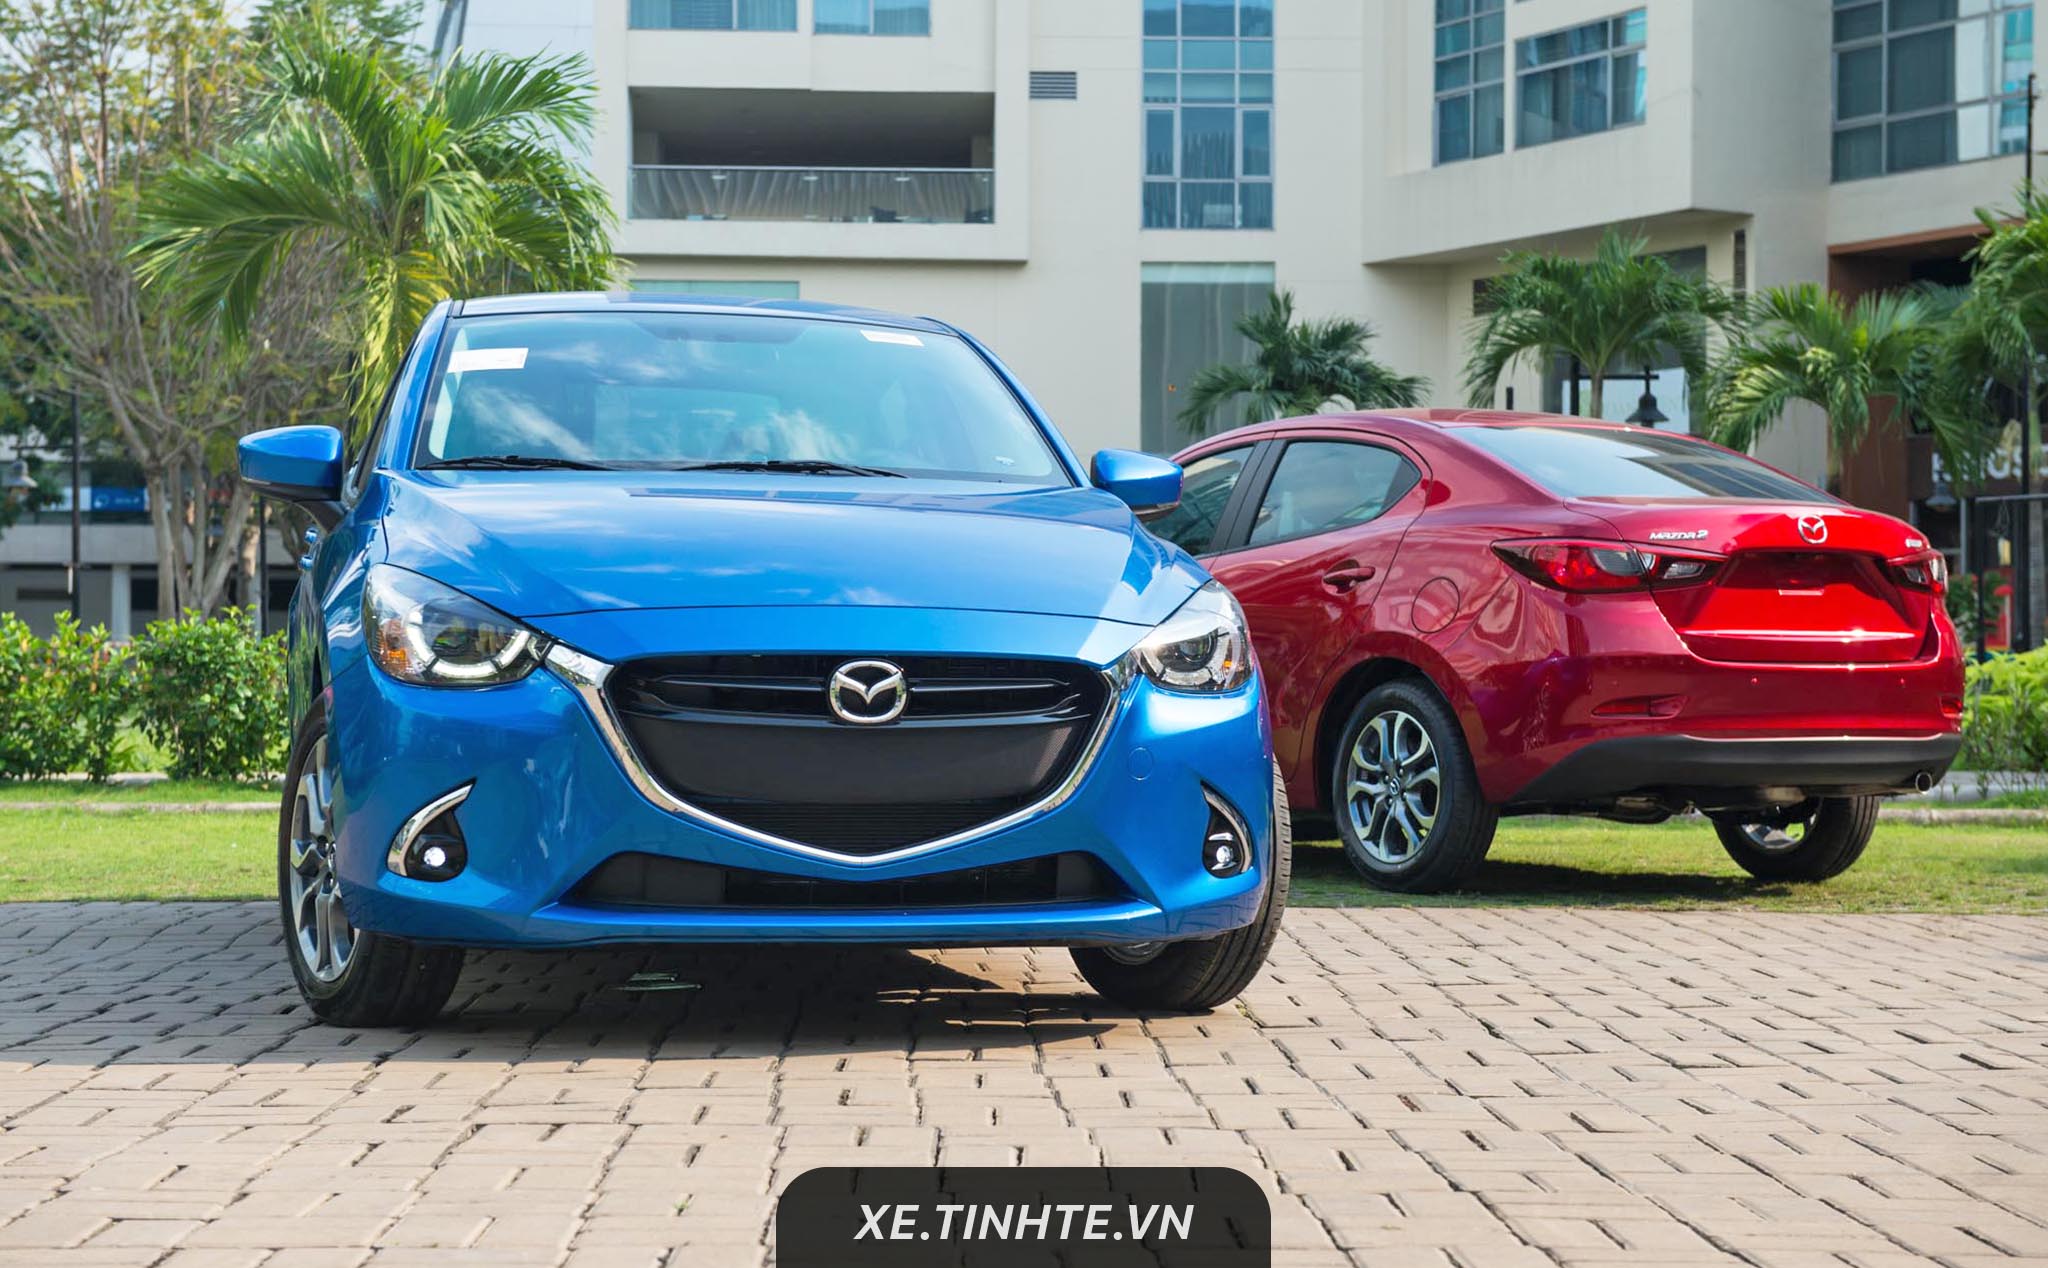 Mazda2 nâng cấp 2019 ra mắt Việt Nam - 4 phiên bản, thêm GVC, giá từ 509 triệu đồng